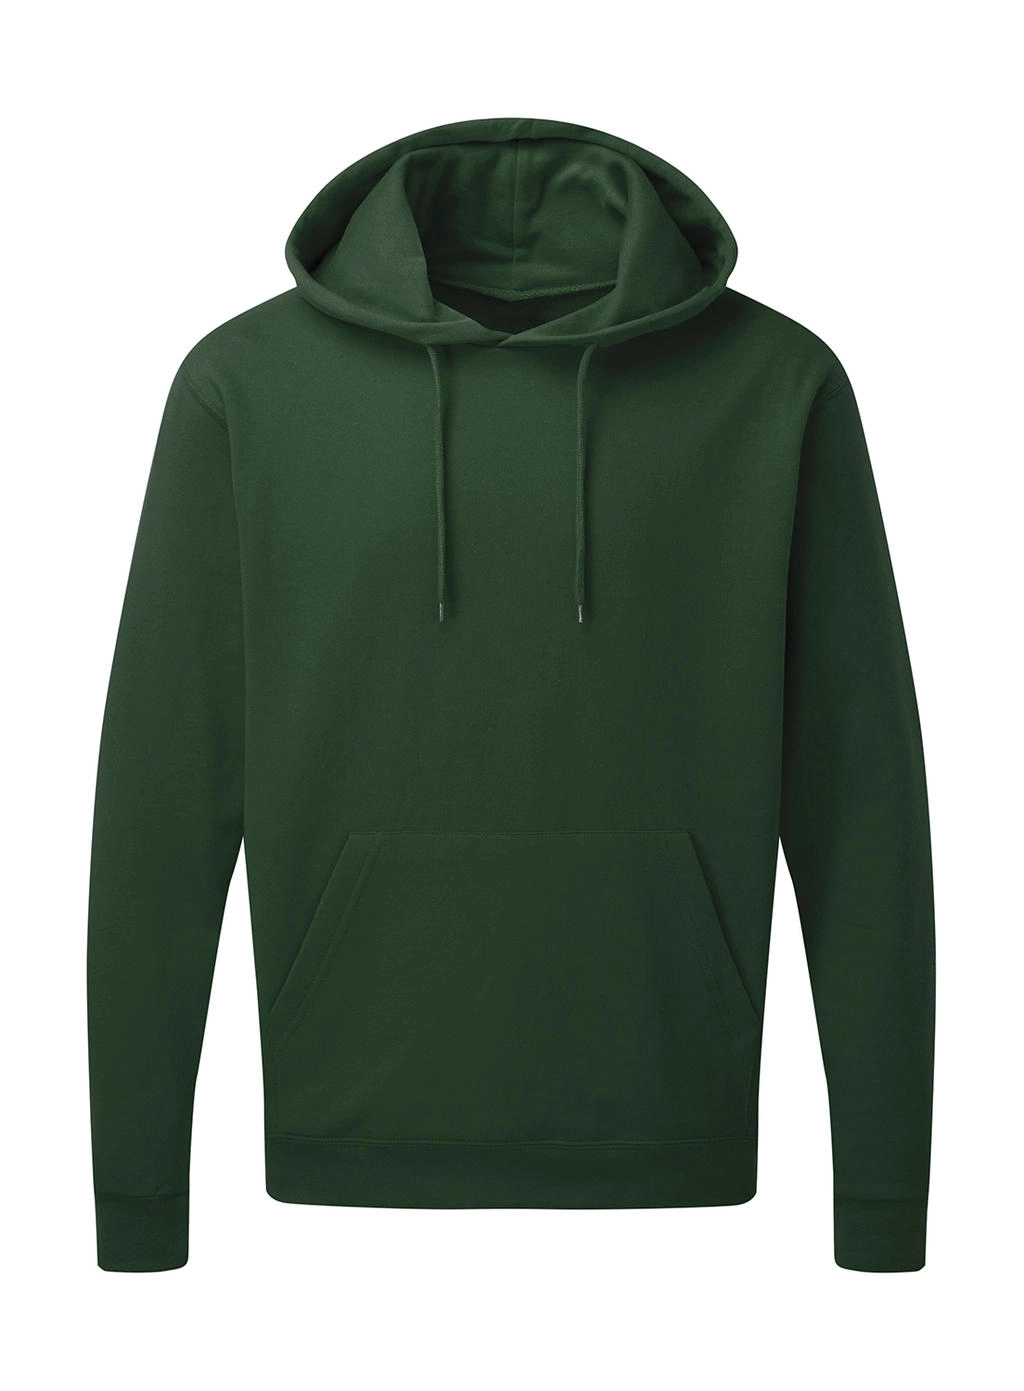 Hooded Sweatshirt Men zum Besticken und Bedrucken in der Farbe Bottle Green mit Ihren Logo, Schriftzug oder Motiv.